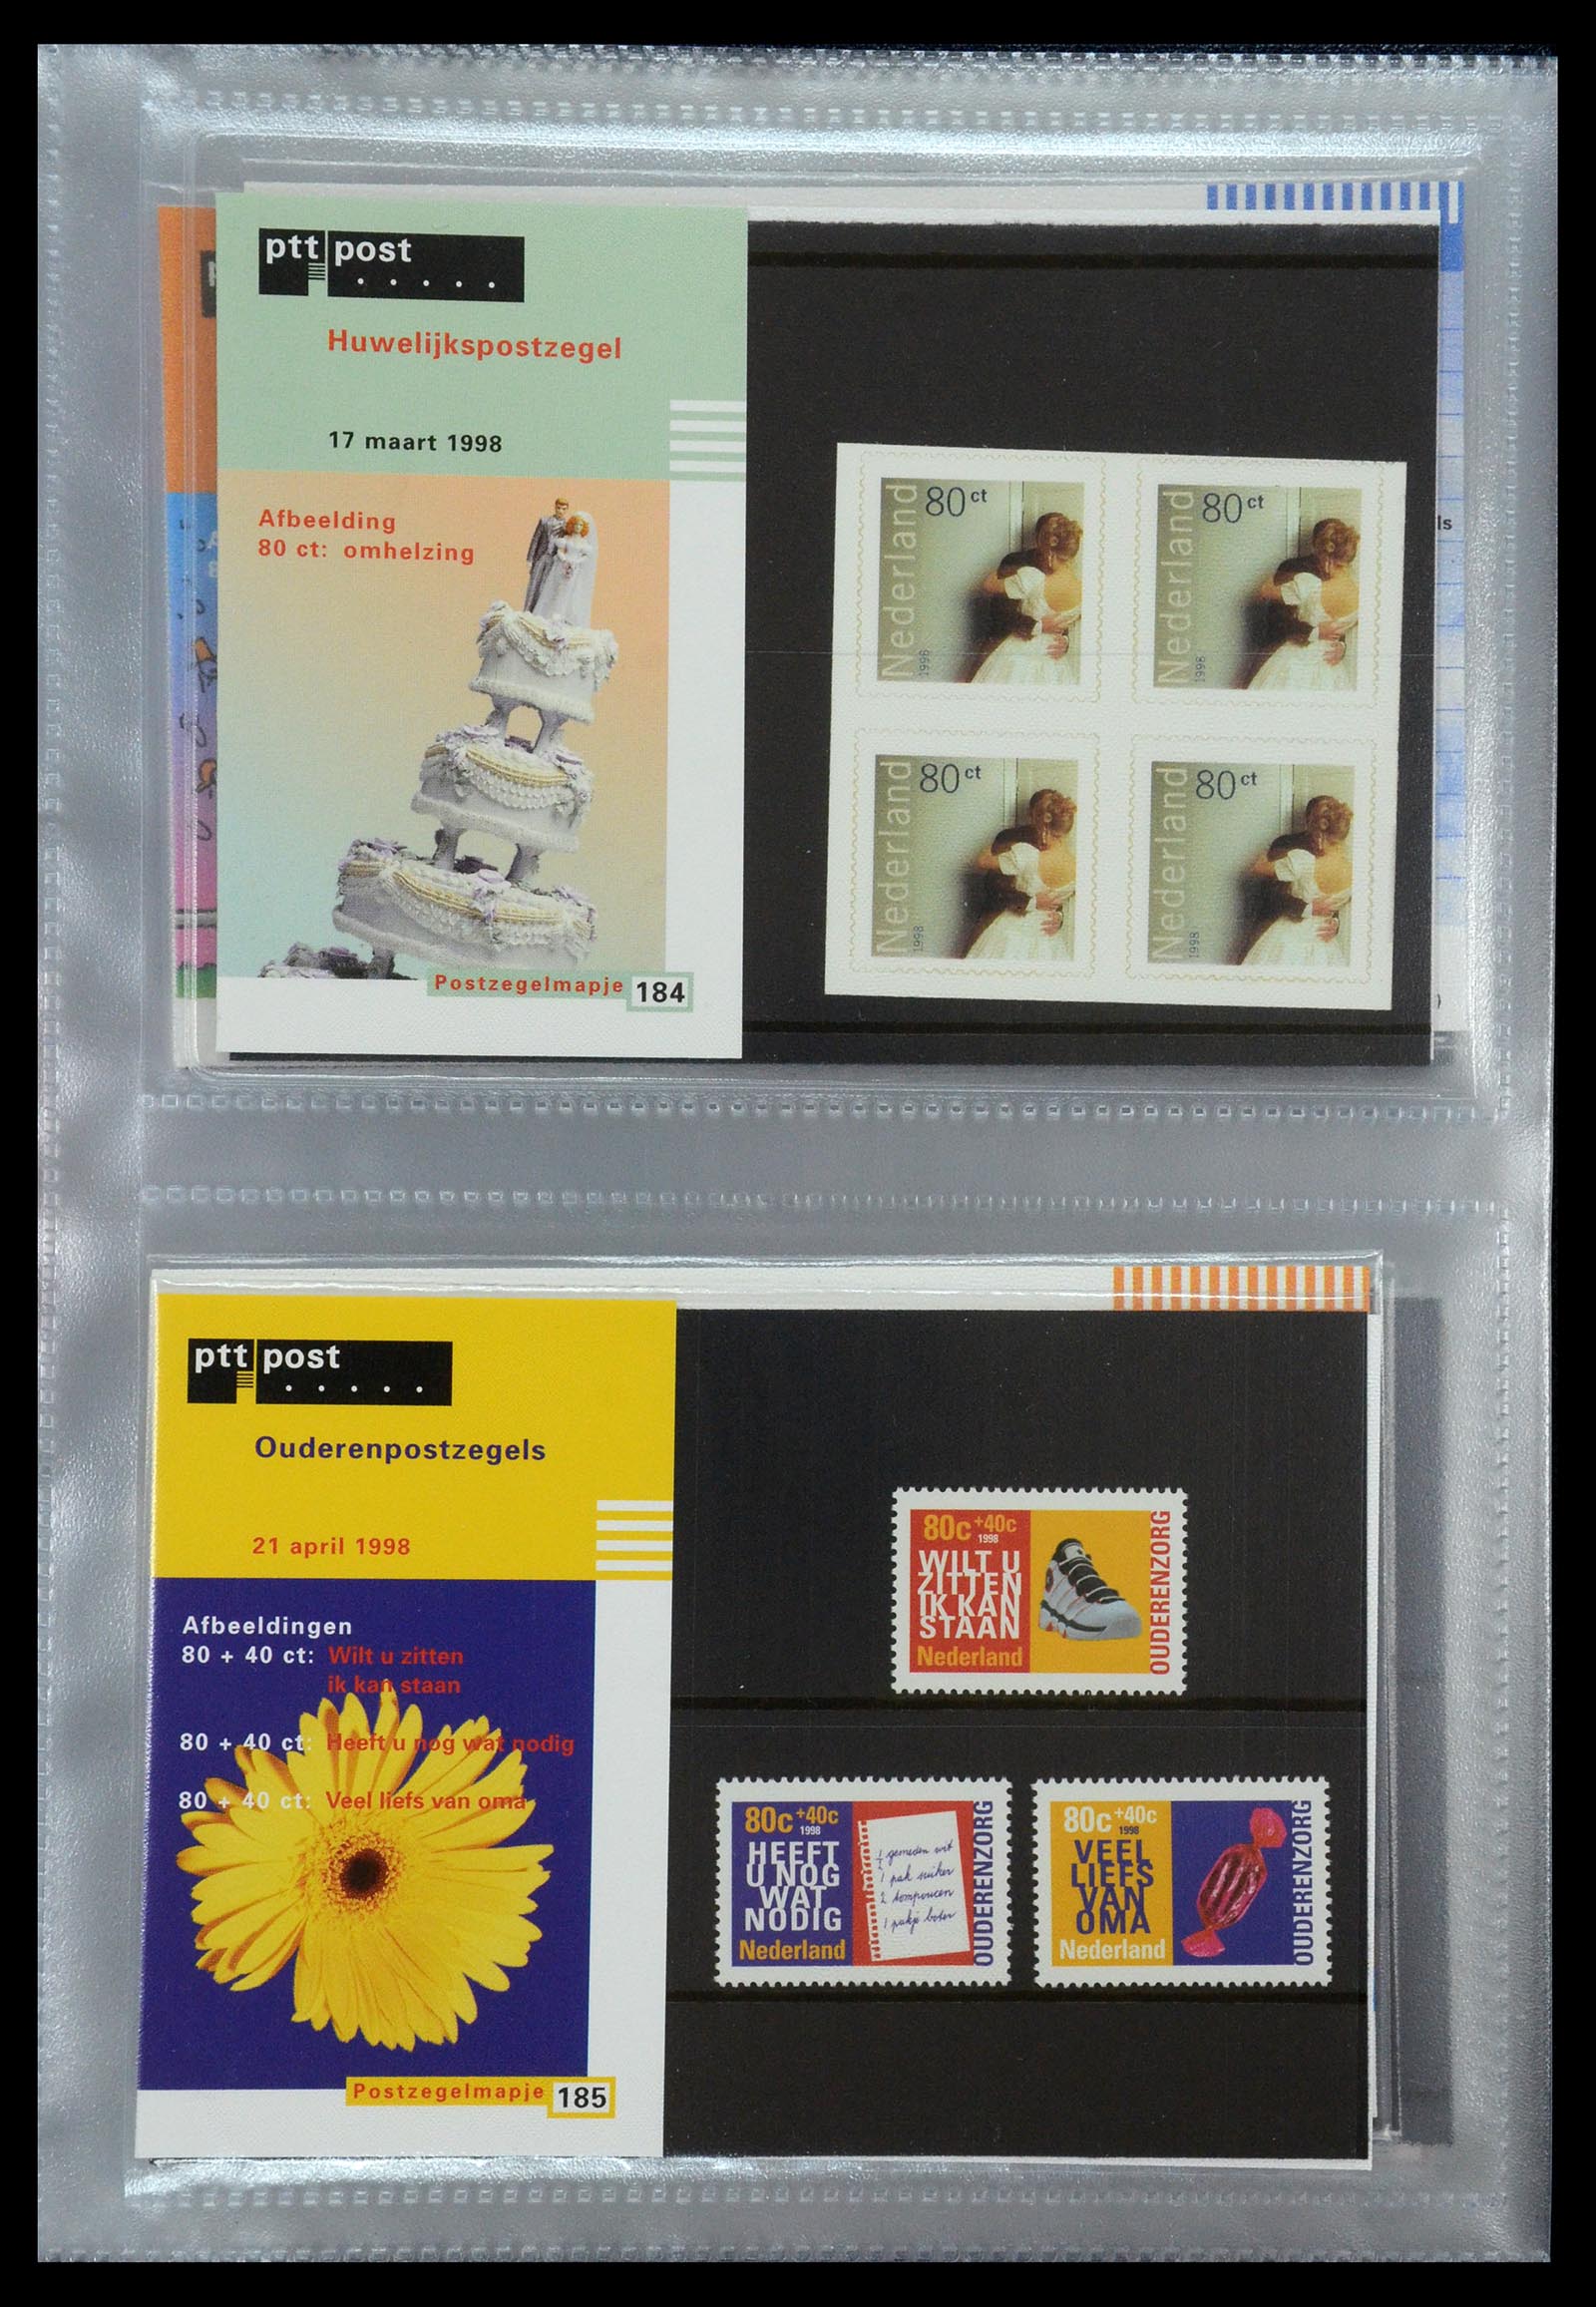 35144 095 - Stamp Collection 35144 Netherlands PTT presentation packs 1982-2021!